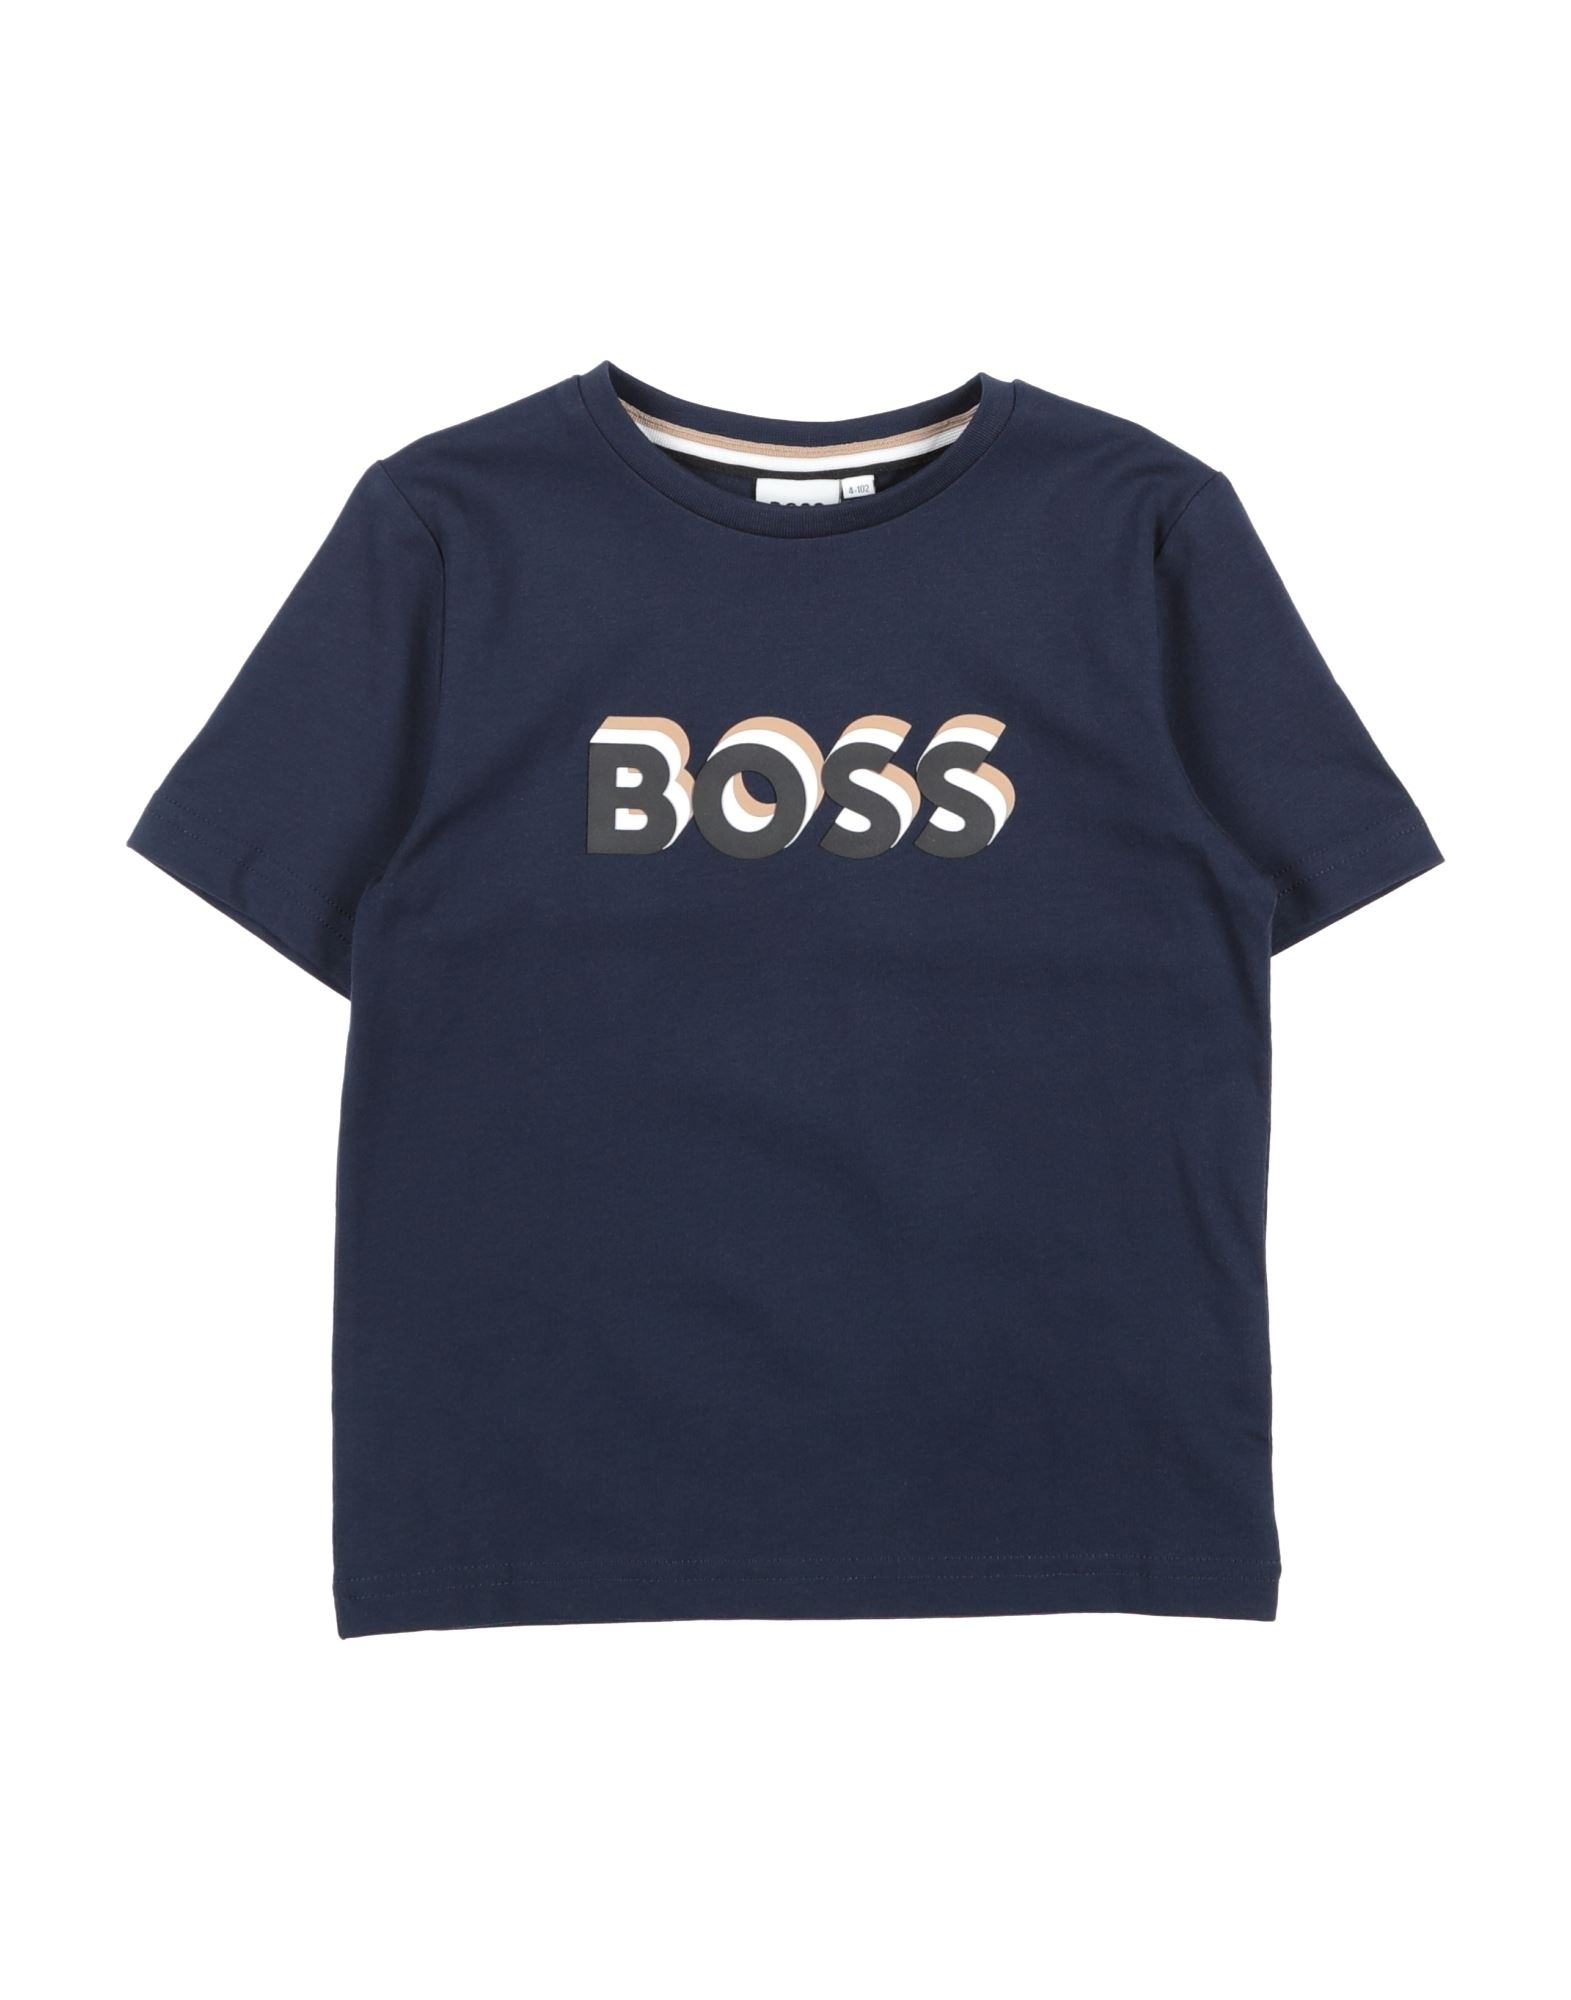 BOSS T-shirts Kinder Nachtblau von BOSS